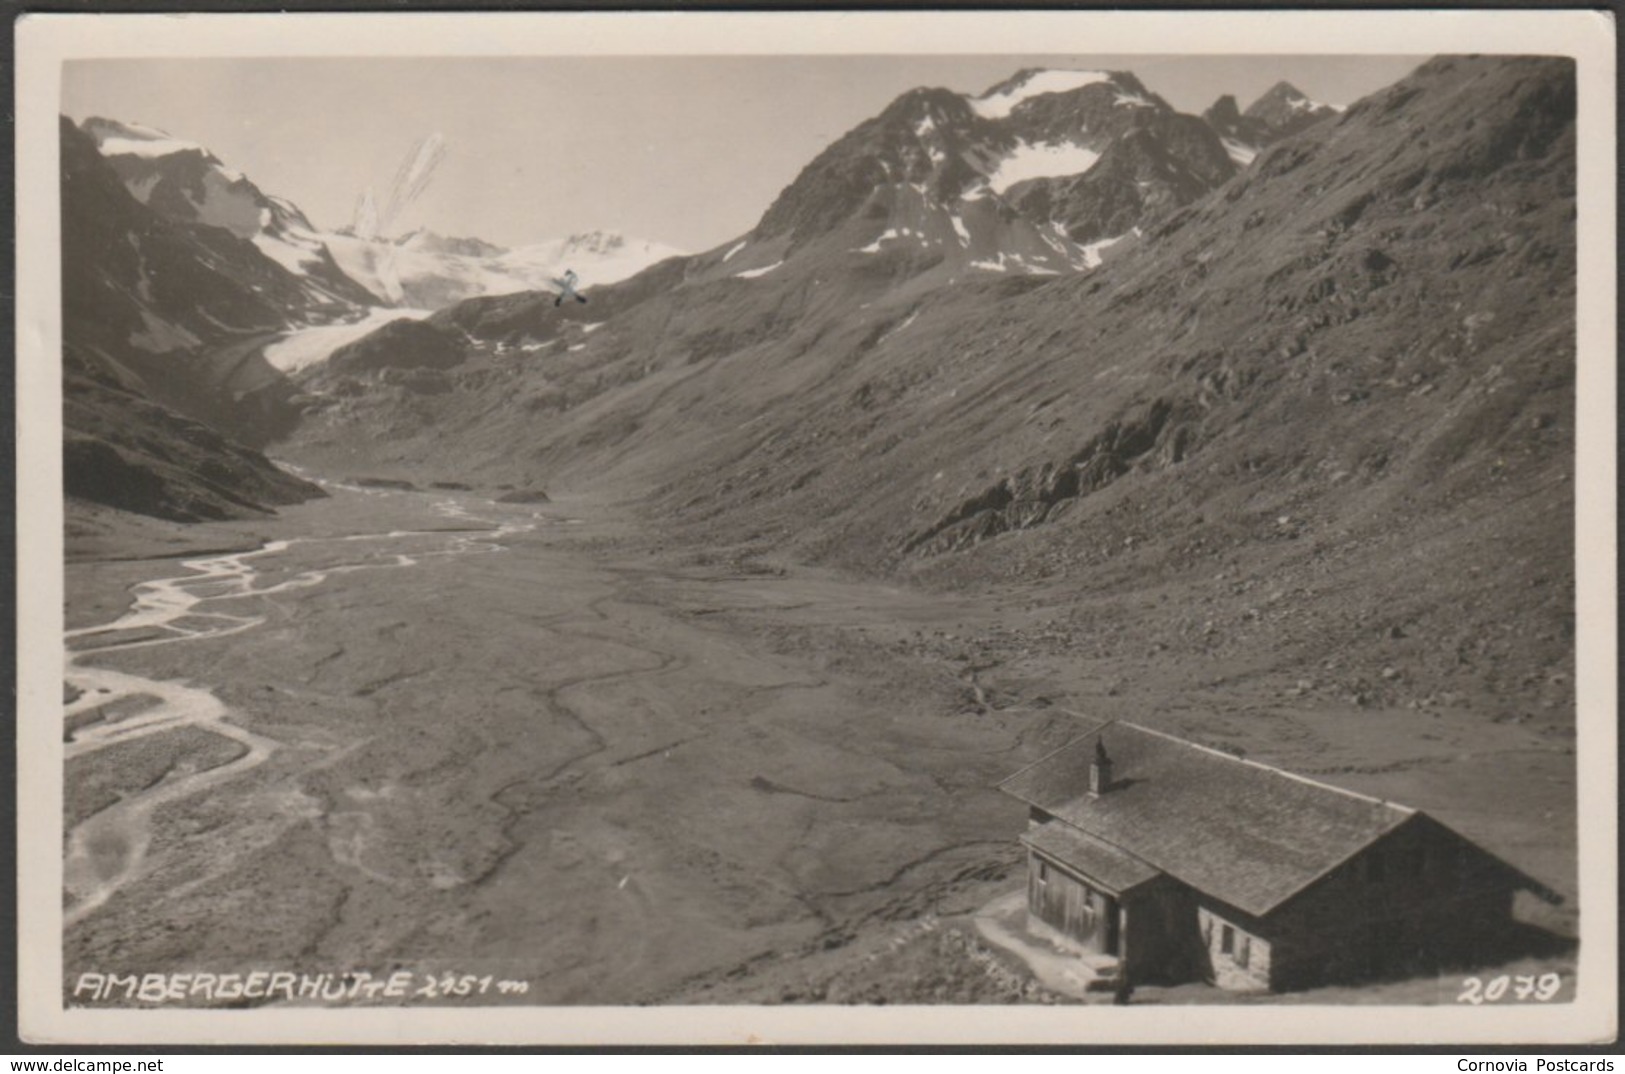 Ambergerhütte, Längenfeld, Tirol, C.1930 - Much Heiss Foto-AK - Längenfeld